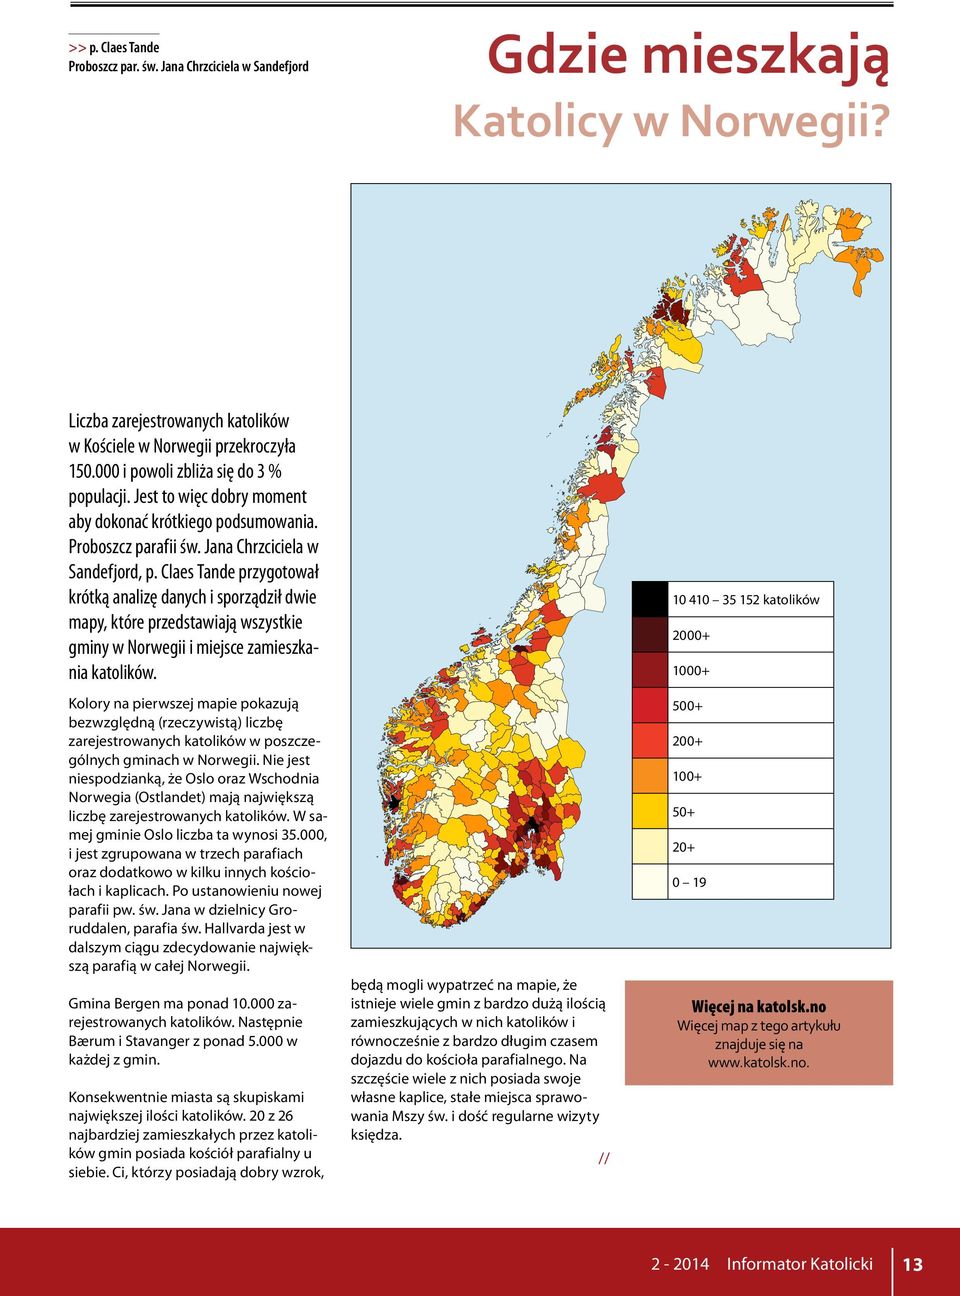 Claes Tande przygotował krótką analizę danych i sporządził dwie mapy, które przedstawiają wszystkie gminy w Norwegii i miejsce zamieszkania katolików.